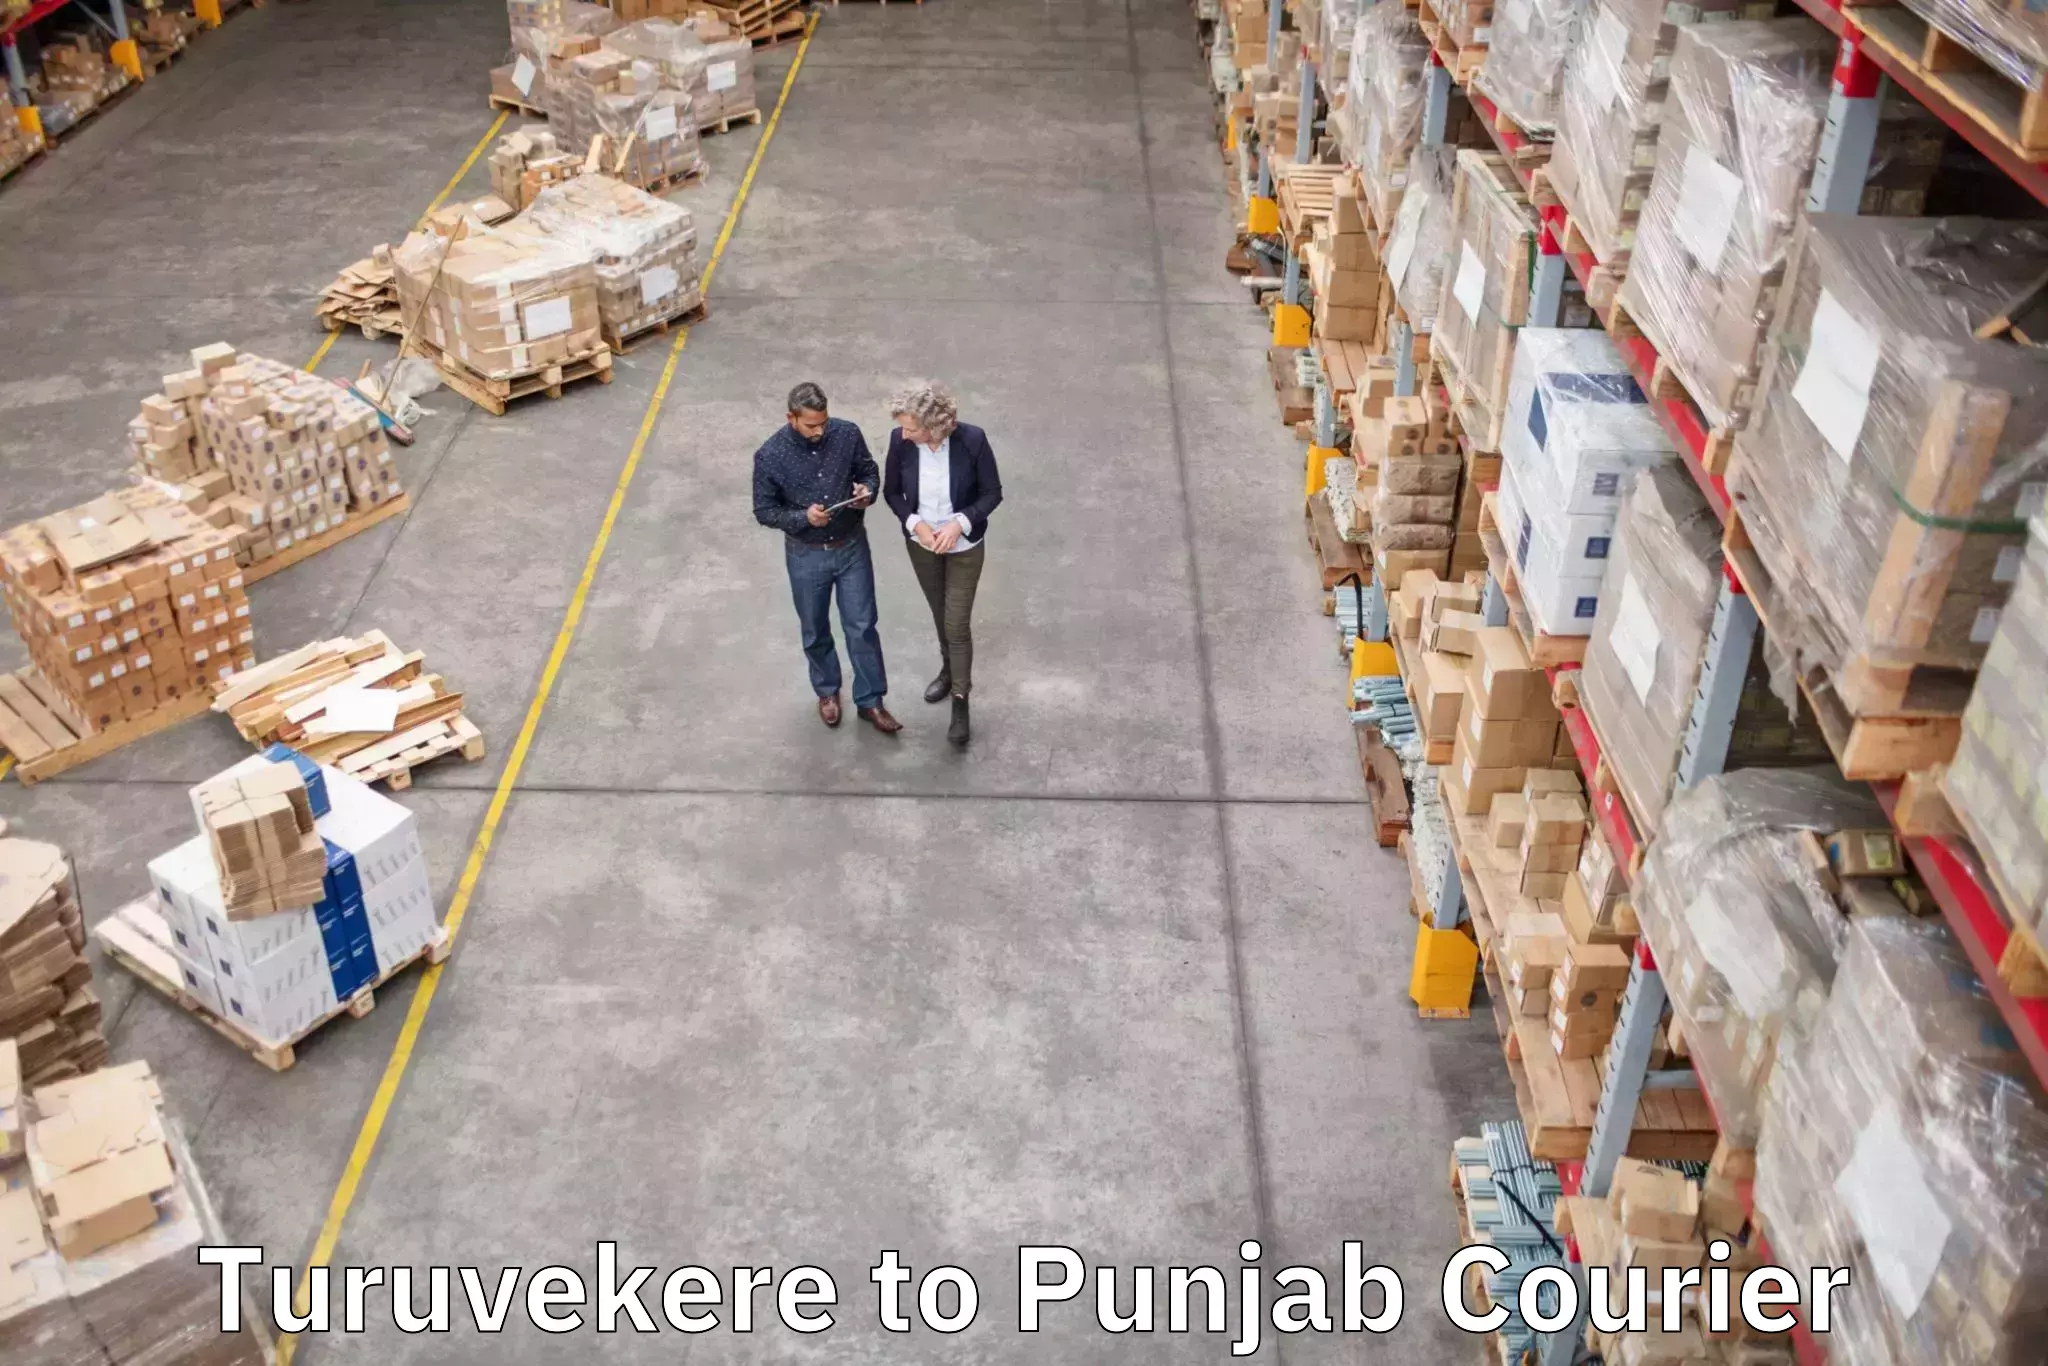 Baggage transport scheduler Turuvekere to Punjab